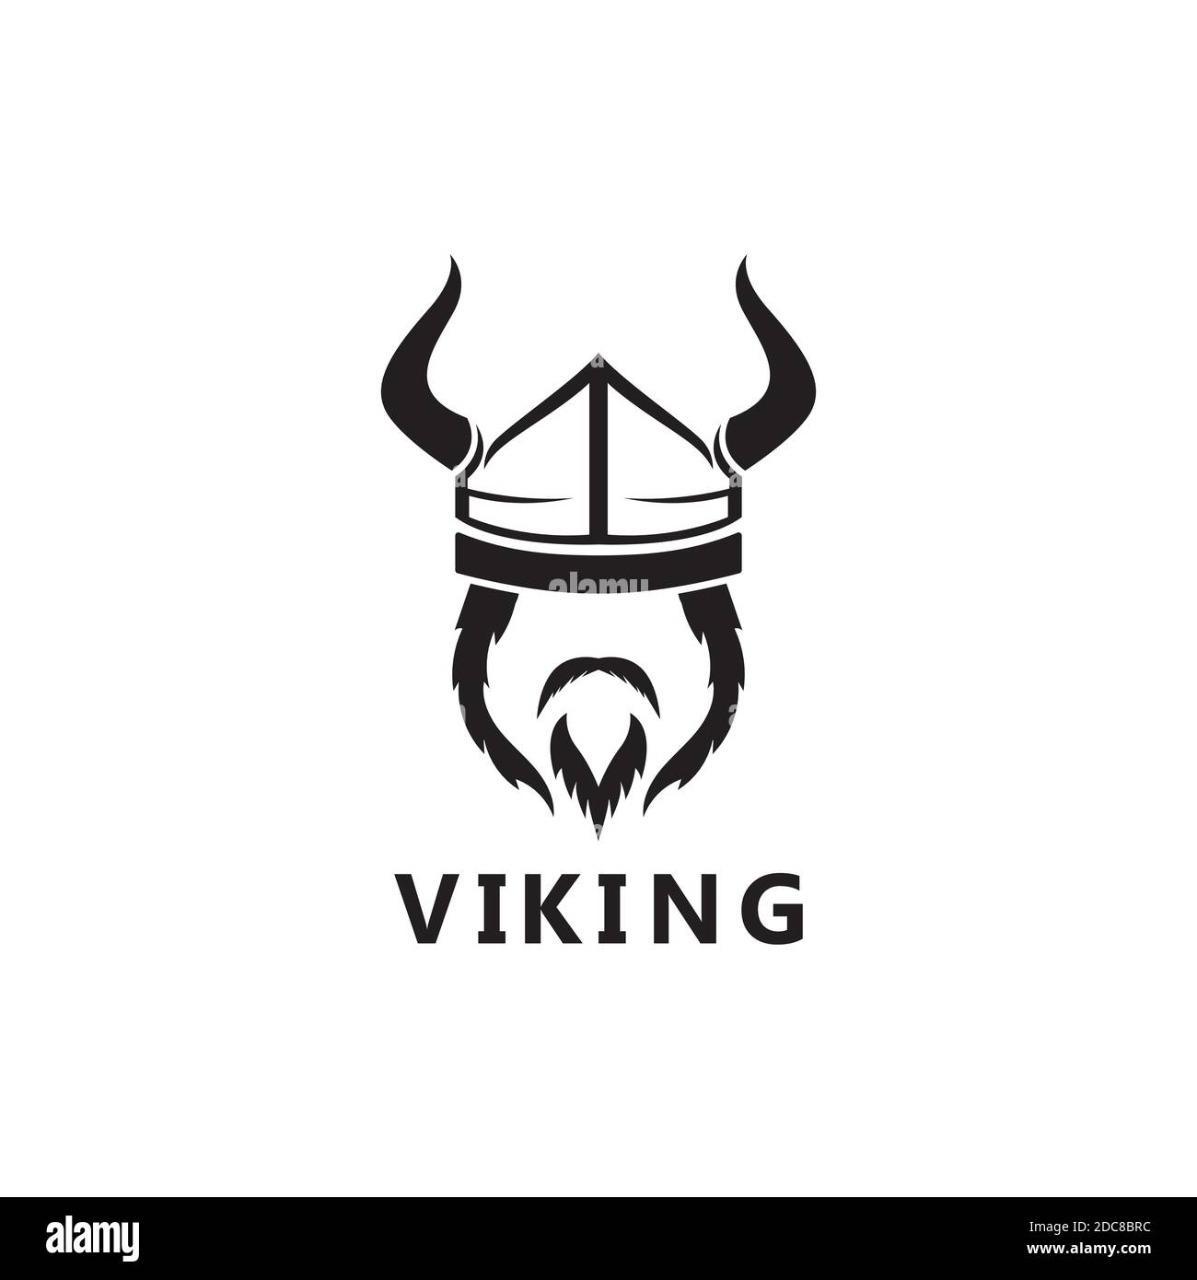 Vikingo95